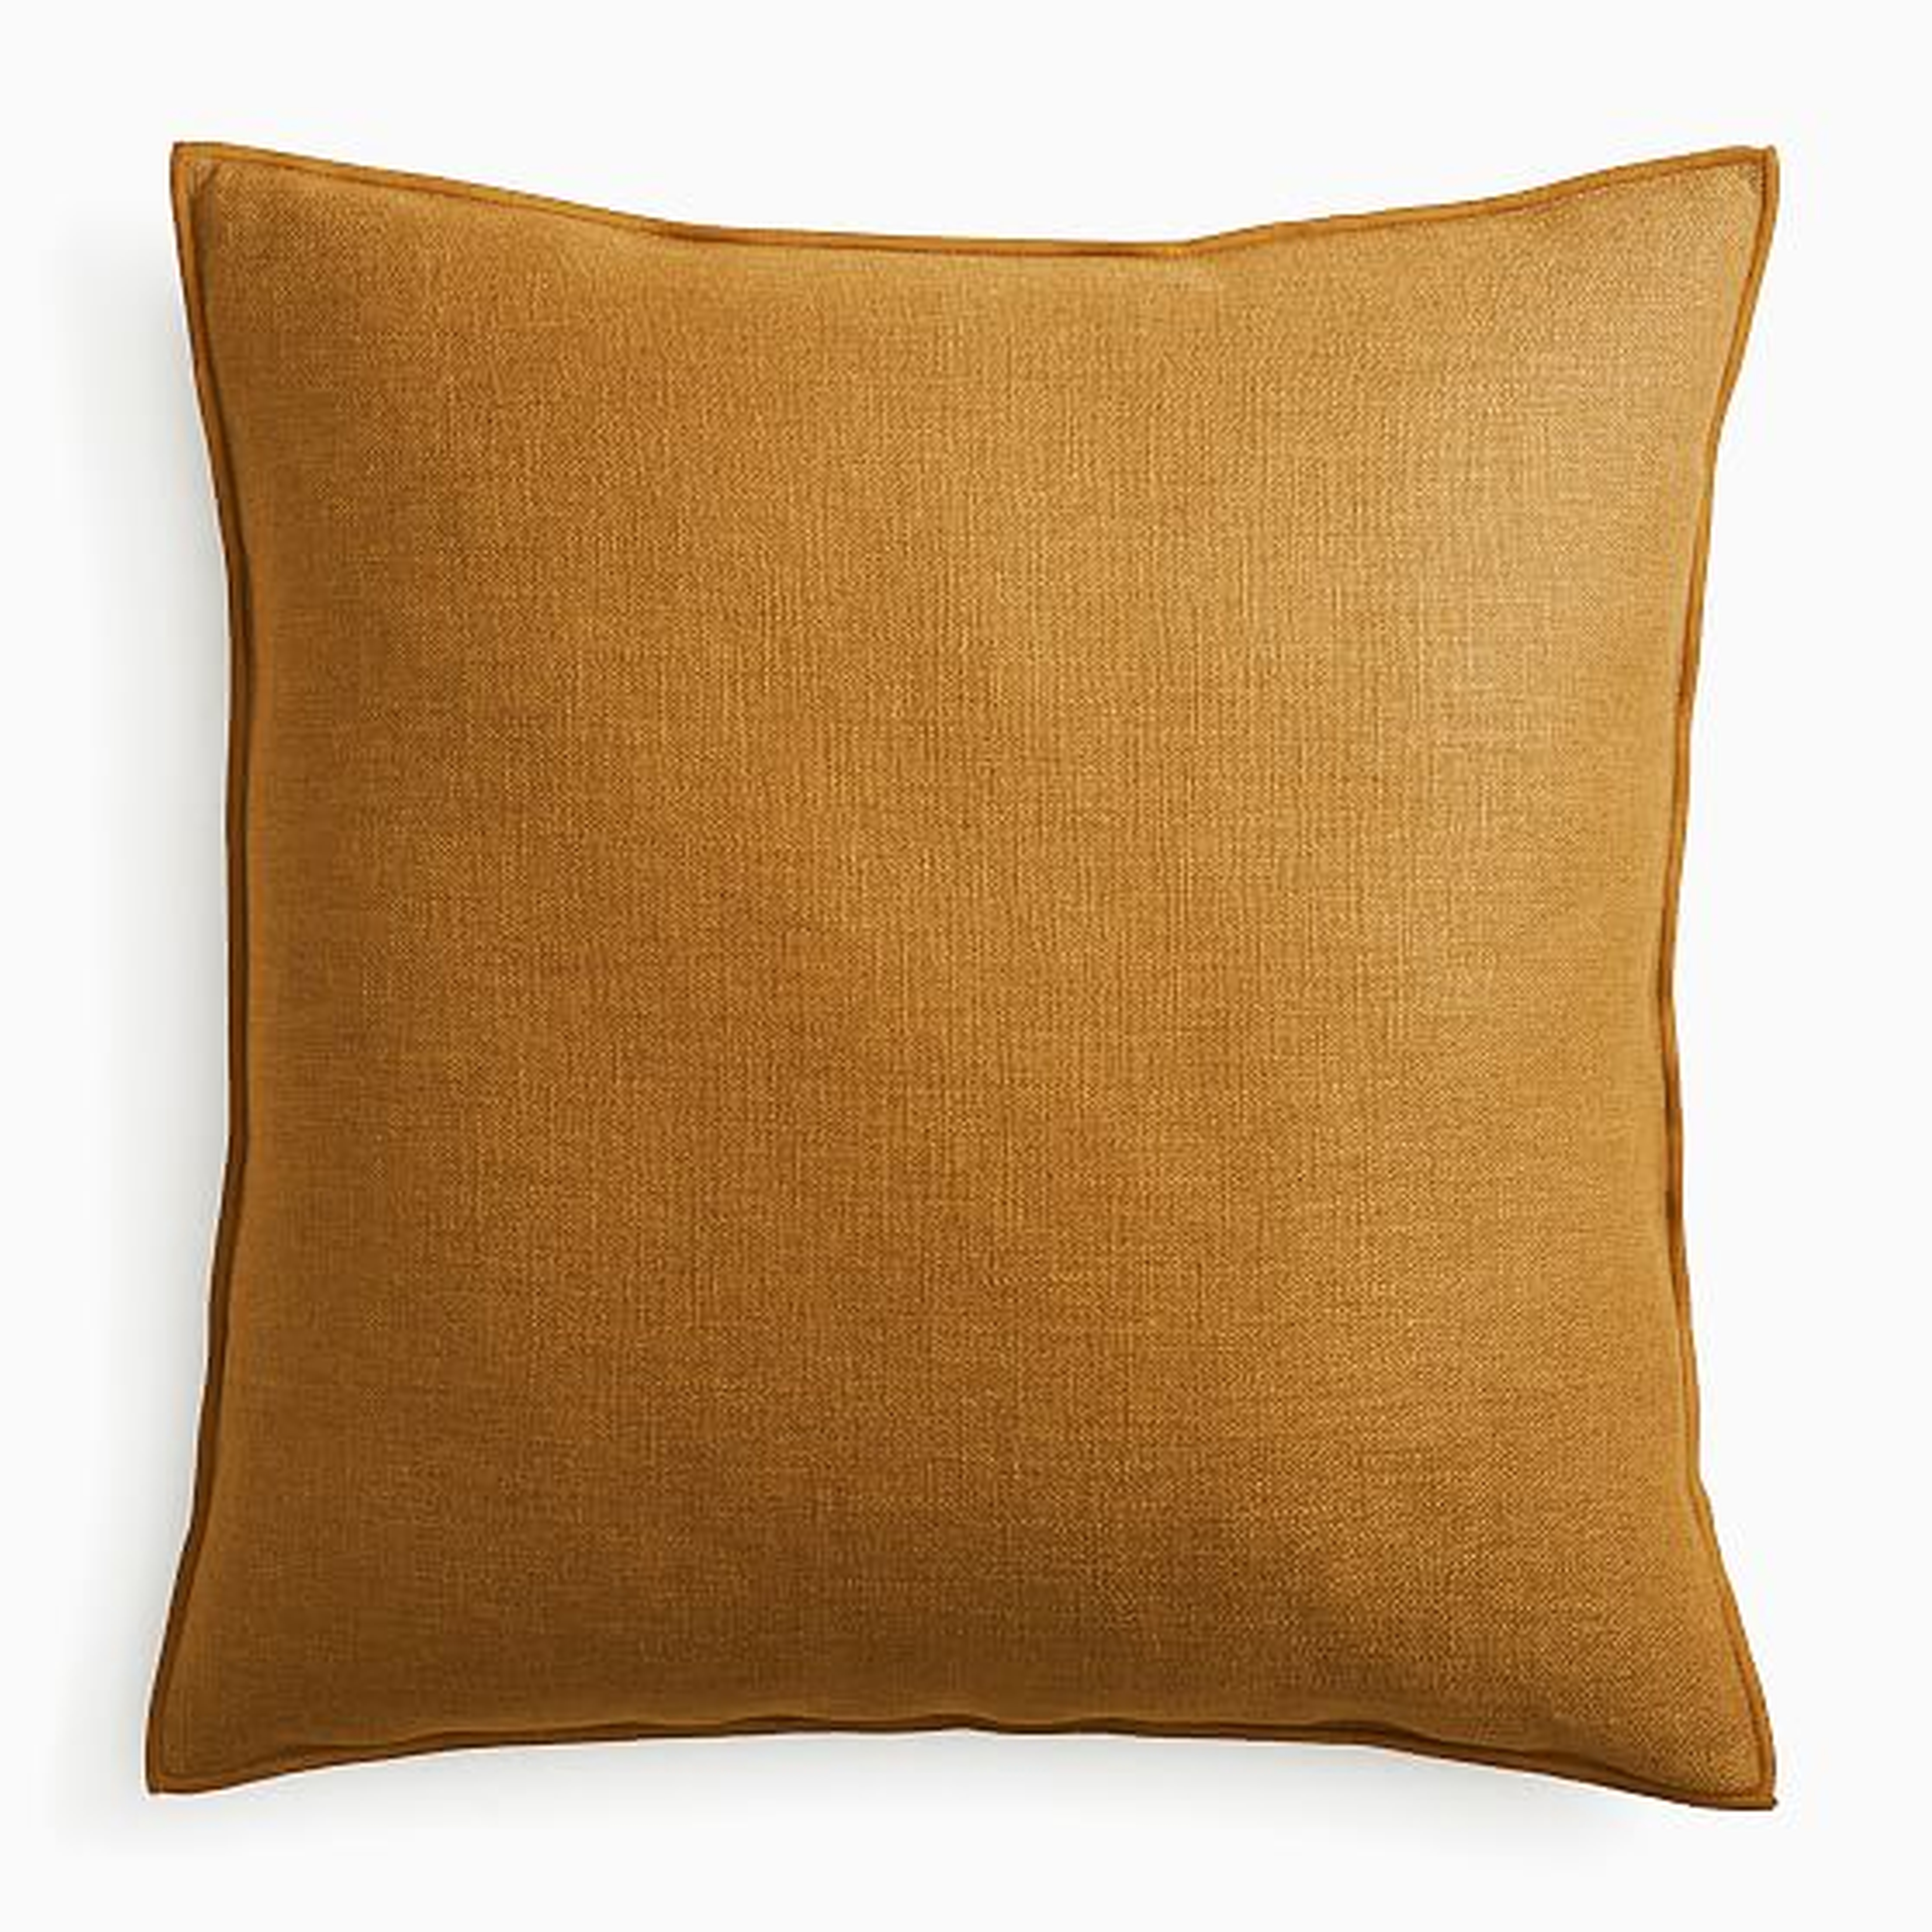 Classic Linen Pillow Cover, 24"x24", Golden Oak - West Elm